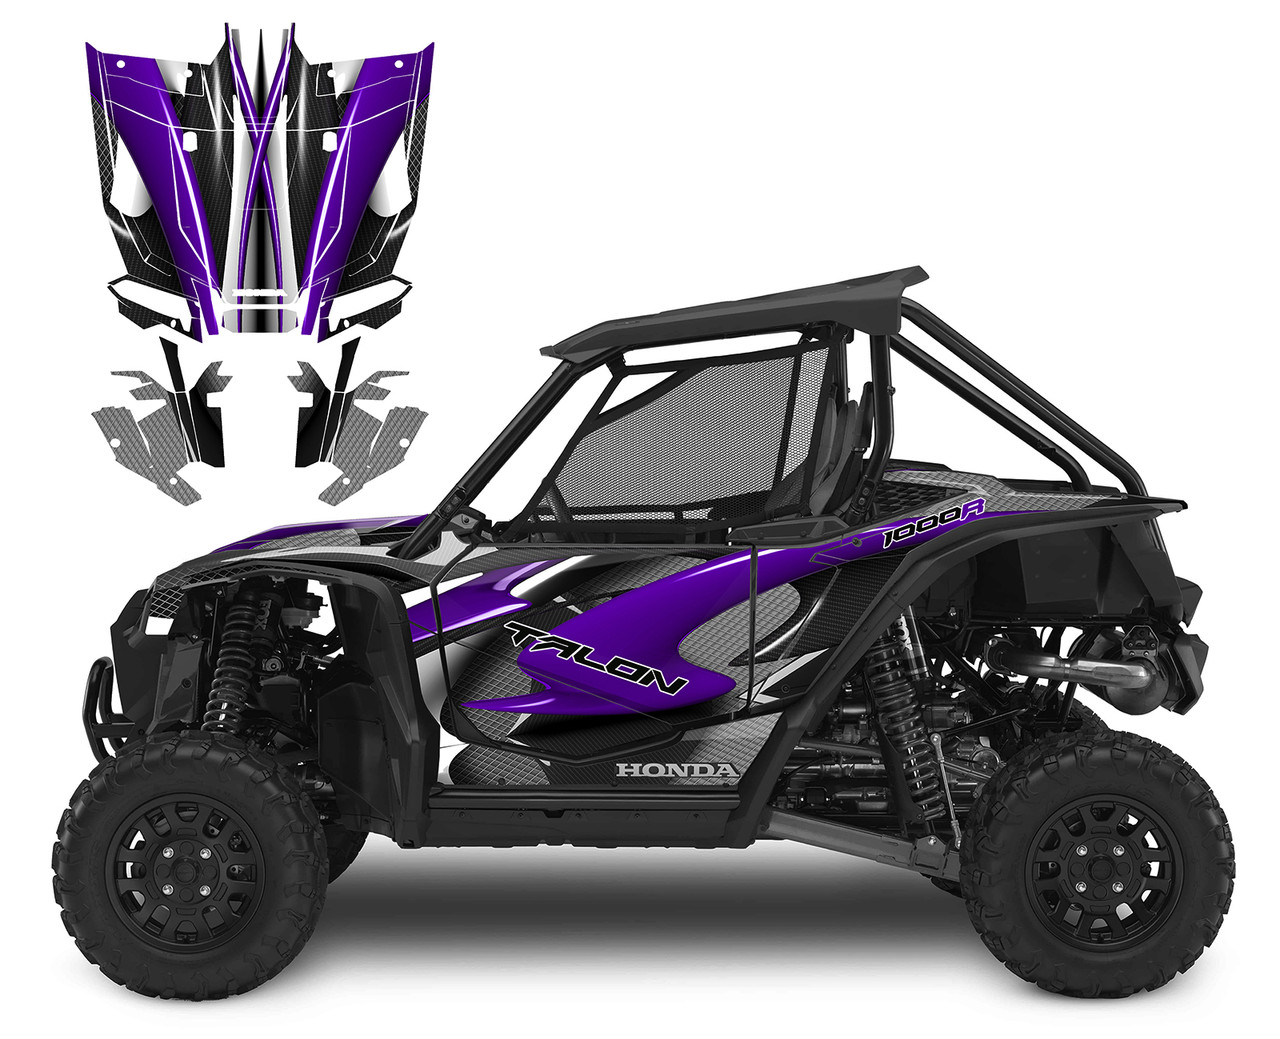 2022 Honda Talon graphic kit design 1533 purple